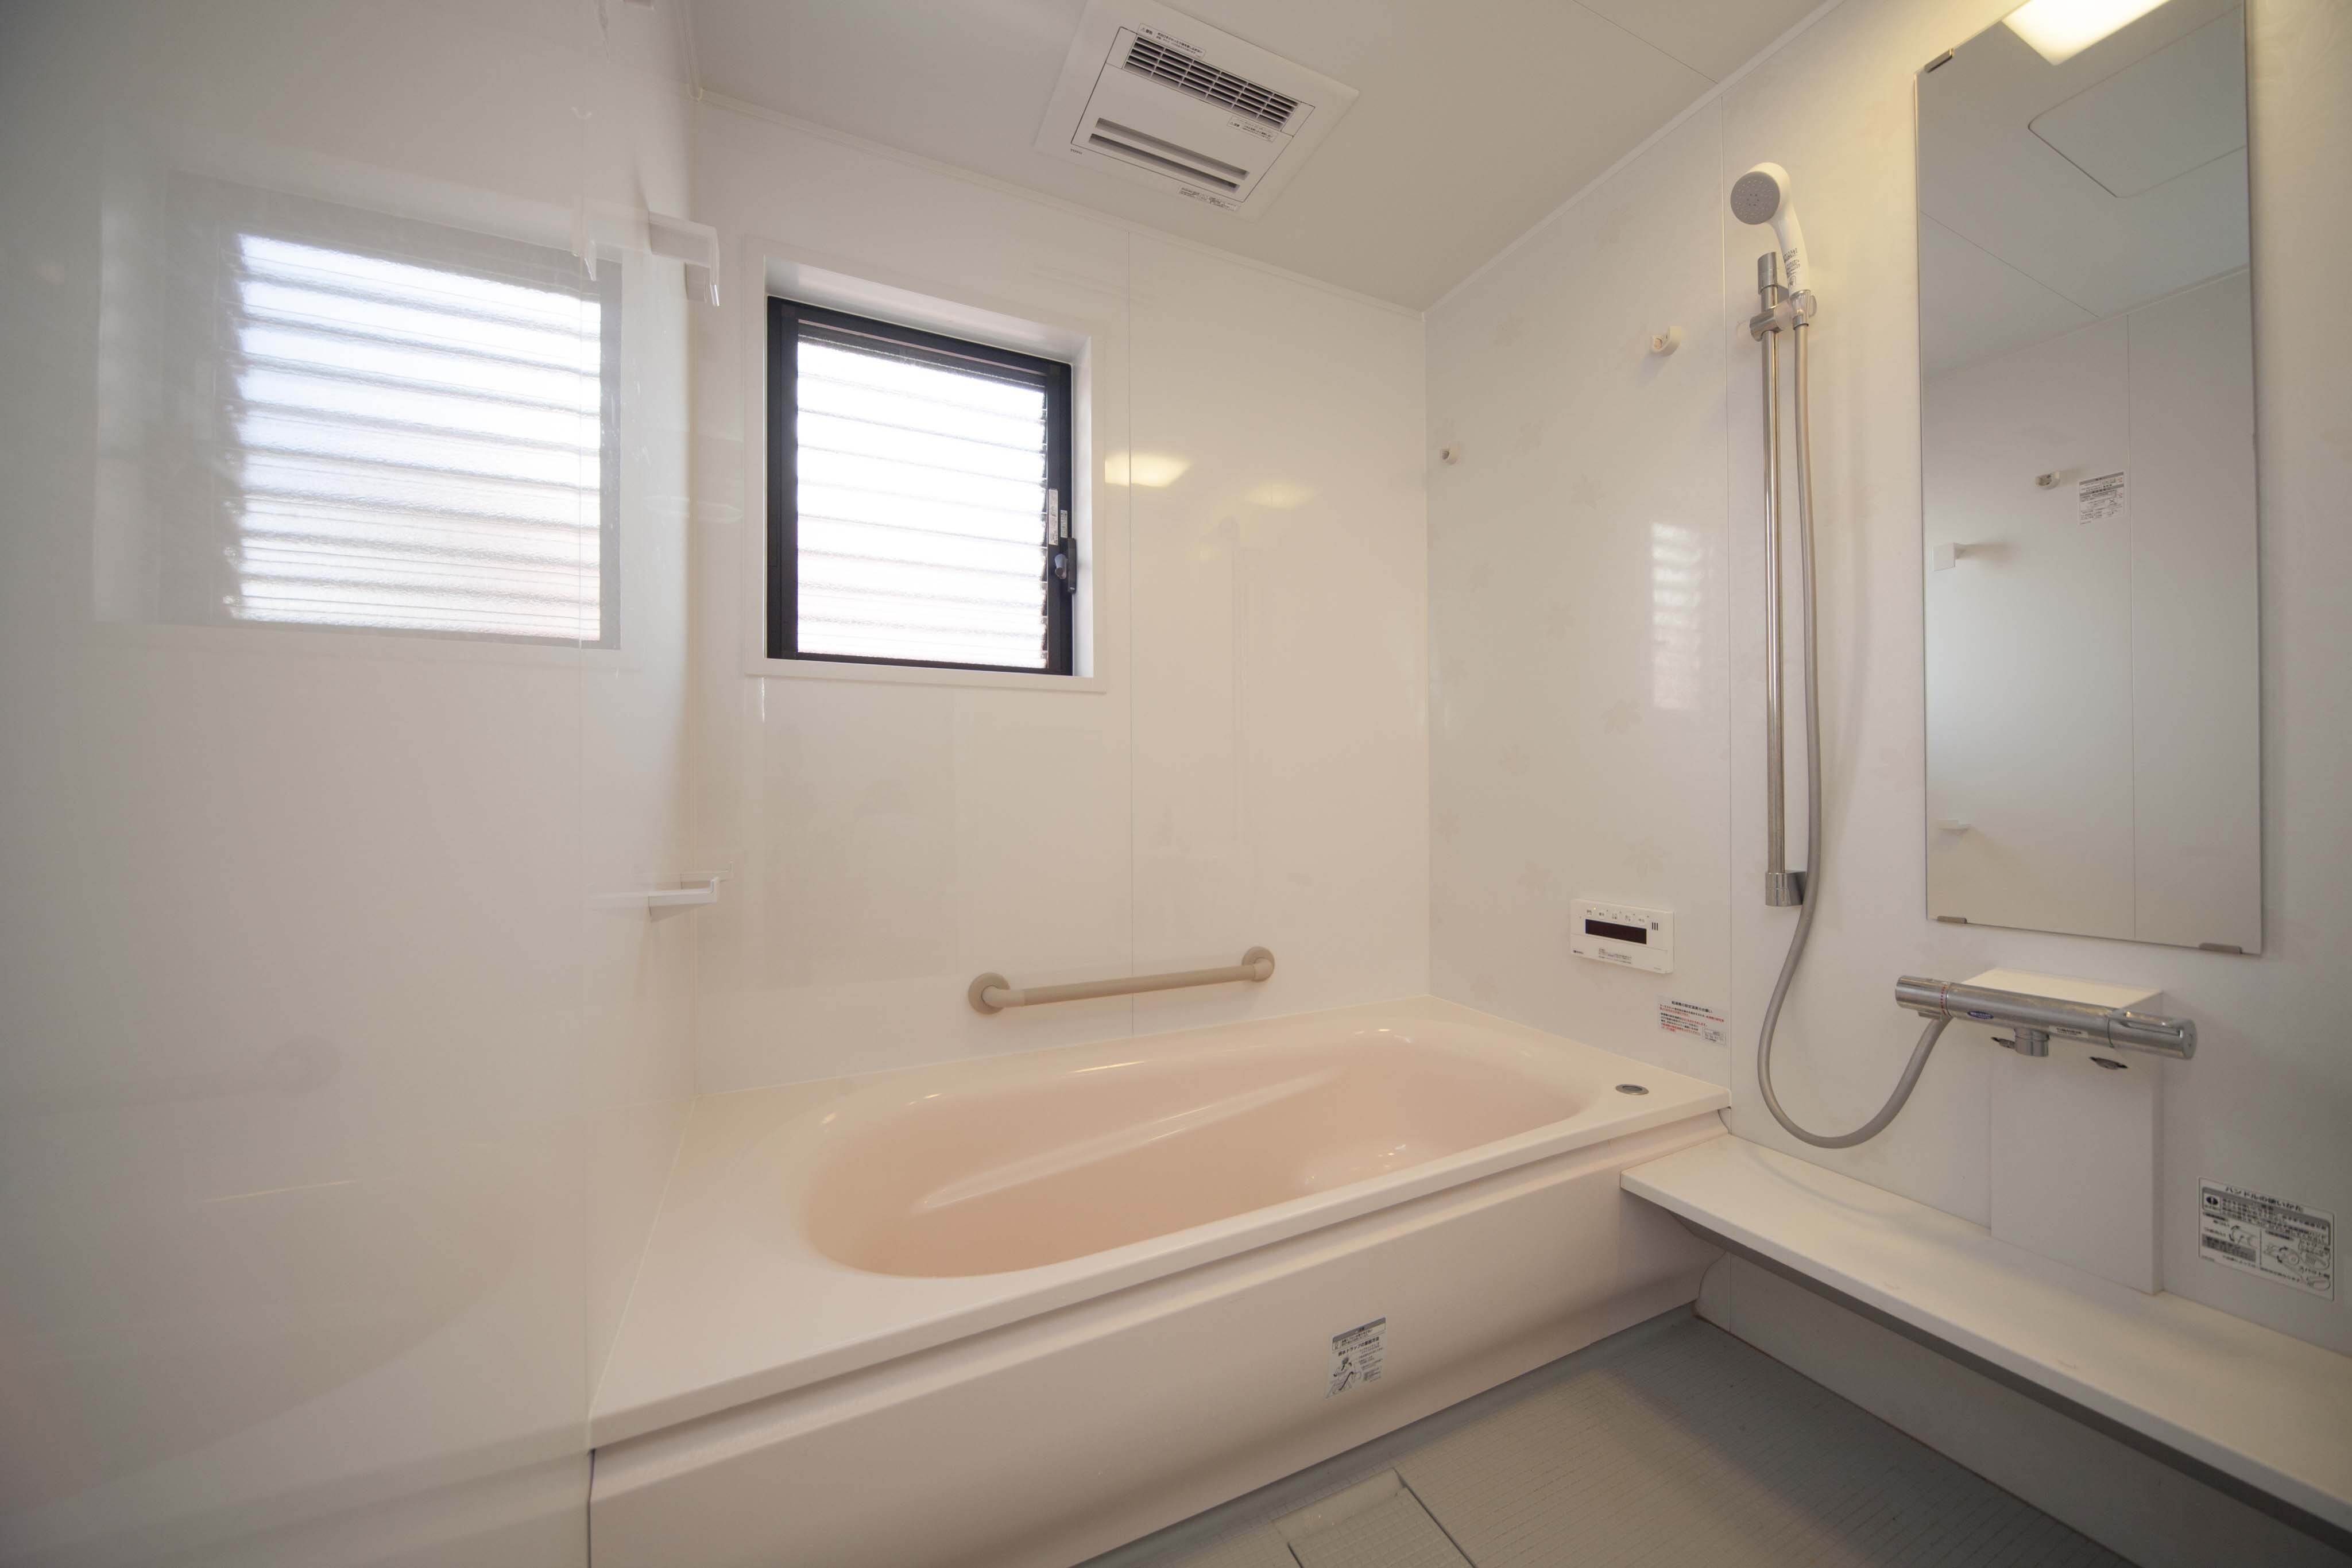 広すぎる浴室をサイズダウン 生まれ変わった洗面脱衣所は収納力もある快適な空間に リフォーム実例 Toto株式会社